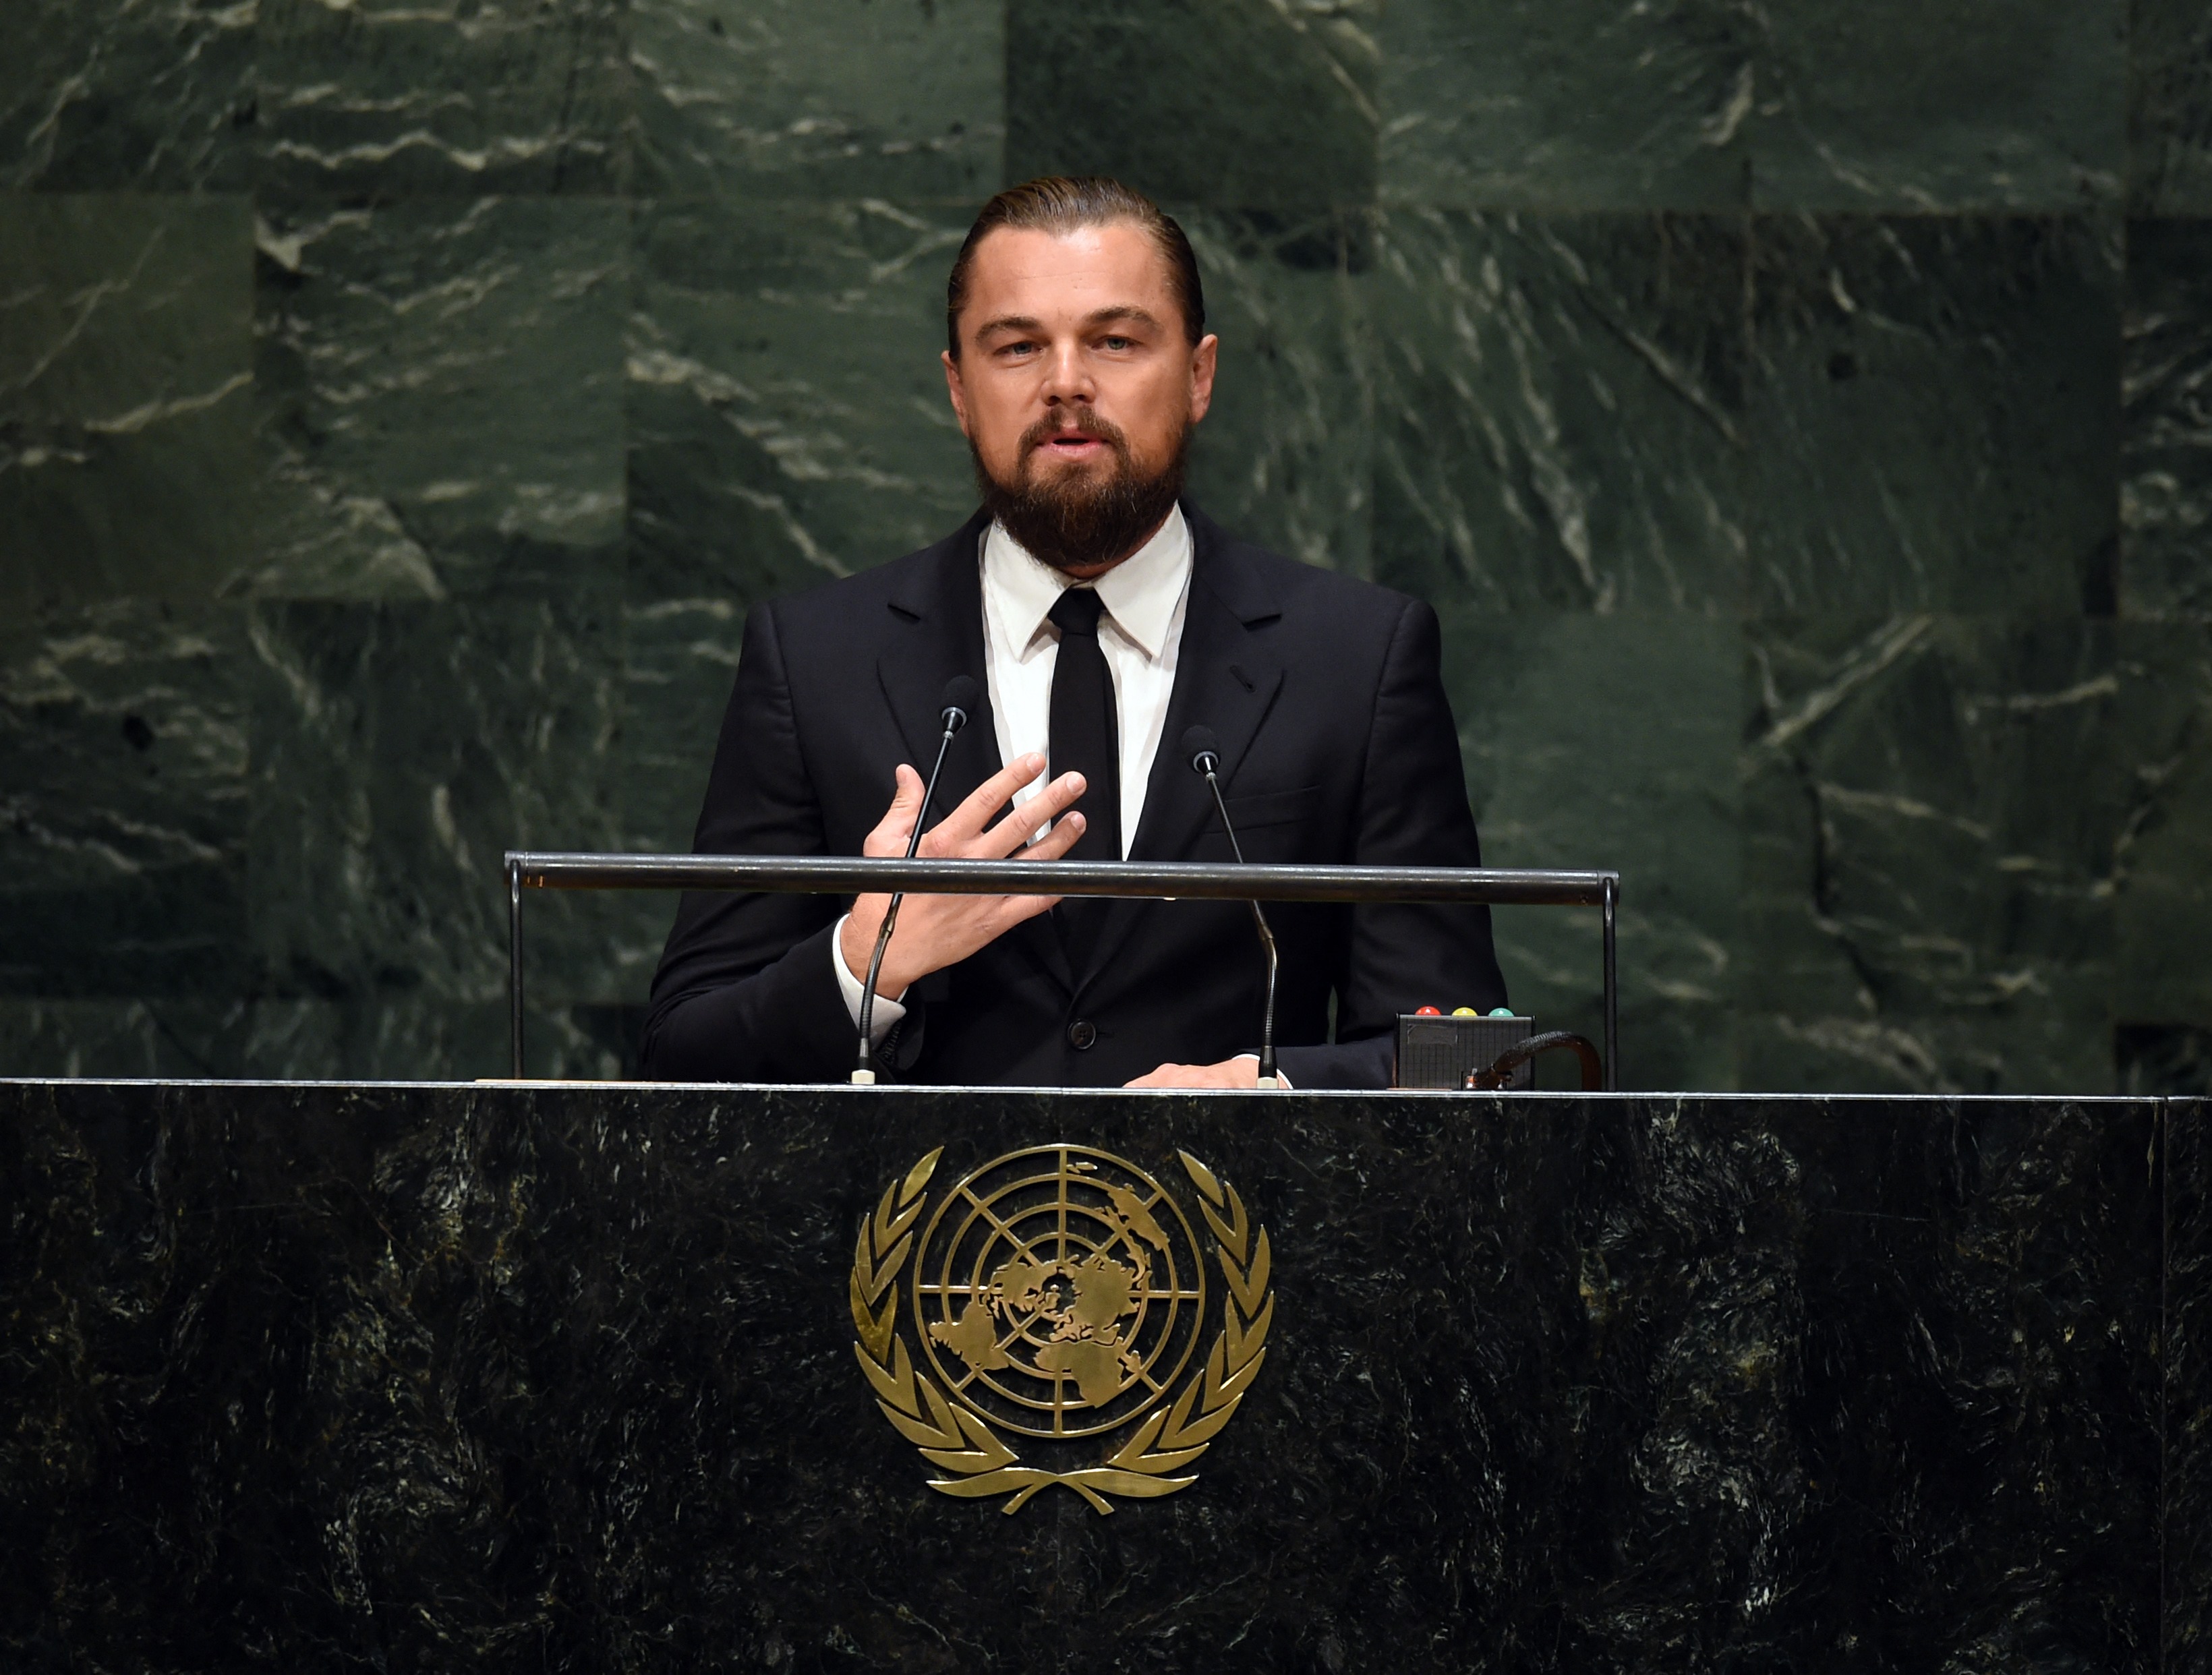 Leo gründete 1998 die Leonardo DiCaprio Foundation, um zum Schutz der letzten wilden Orte der Erde beizutragen